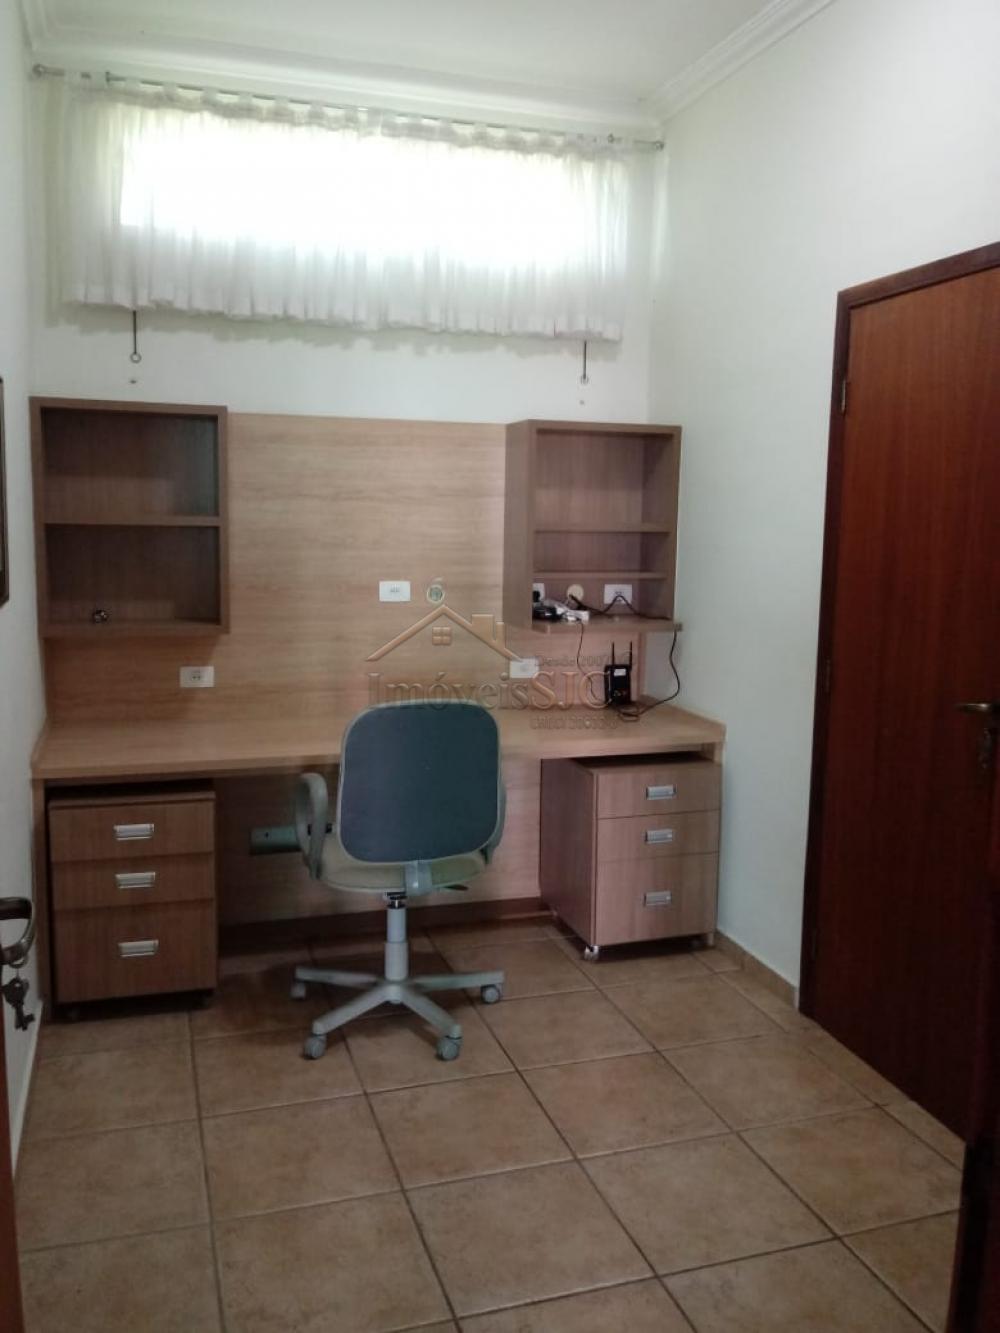 Comprar Casas / Condomínio em Jacareí R$ 1.900.000,00 - Foto 7